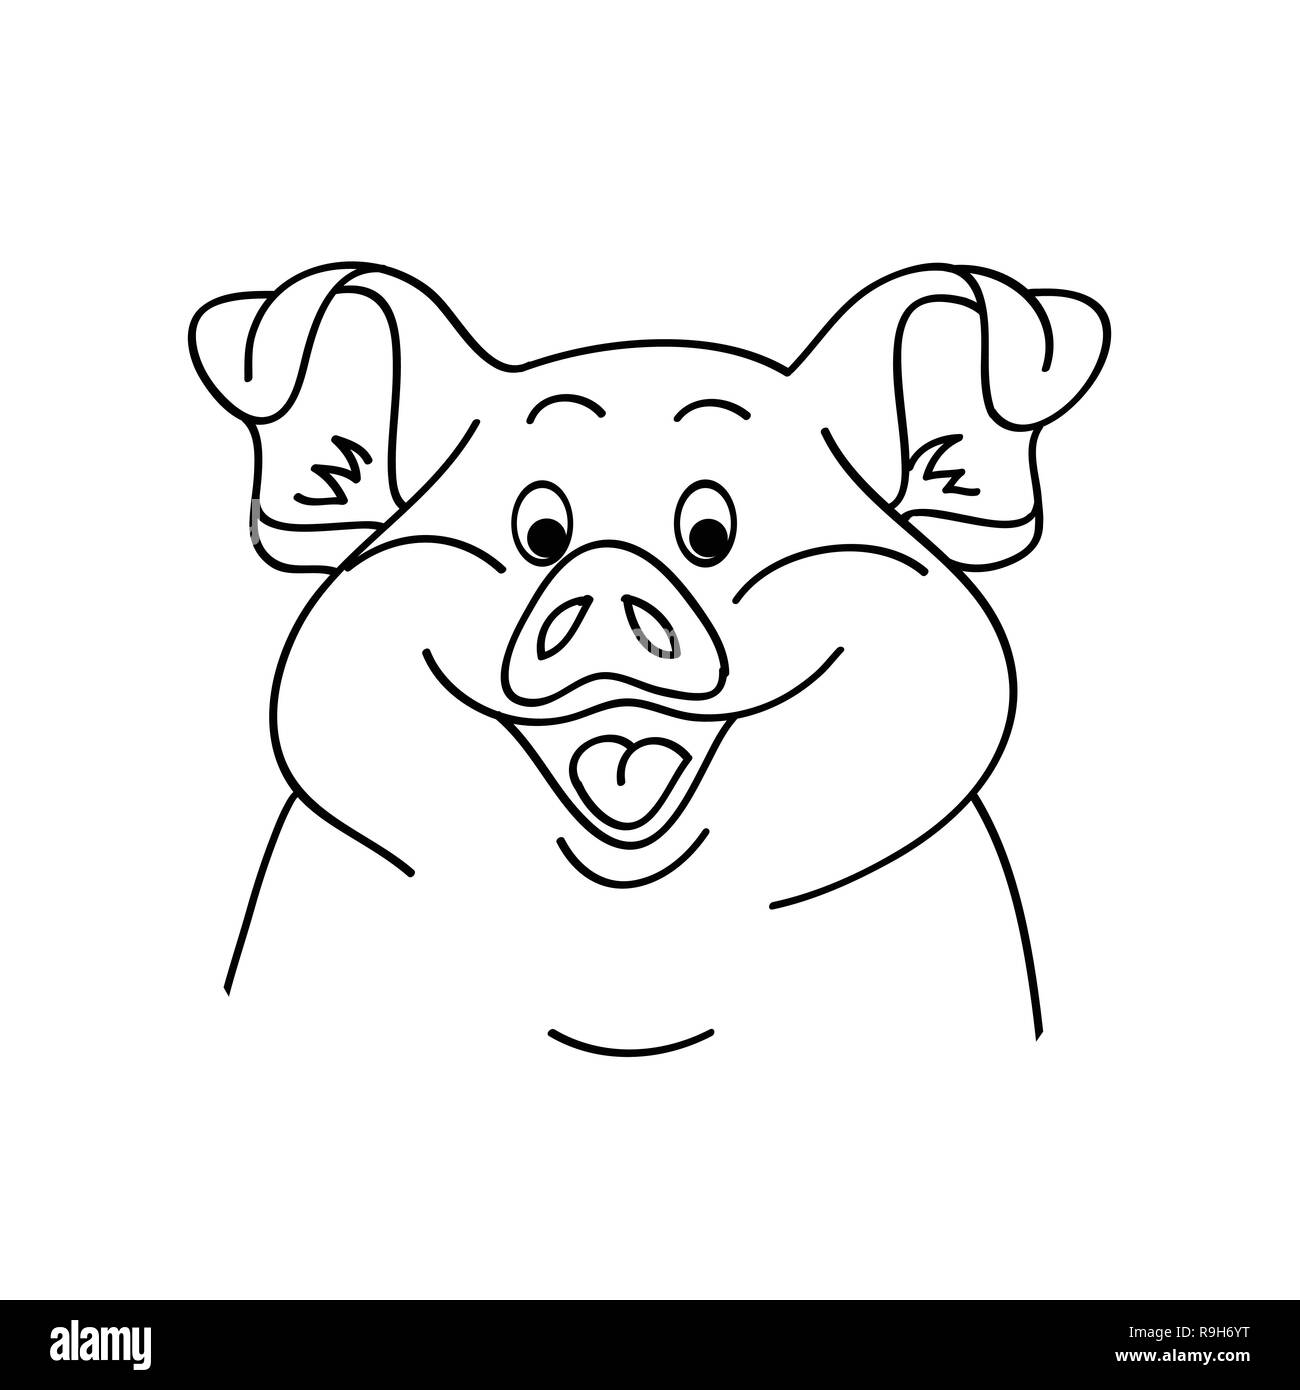 Cochon sur un fond blanc. Vector illustration de cochon. Cartoon pig face Illustration de Vecteur